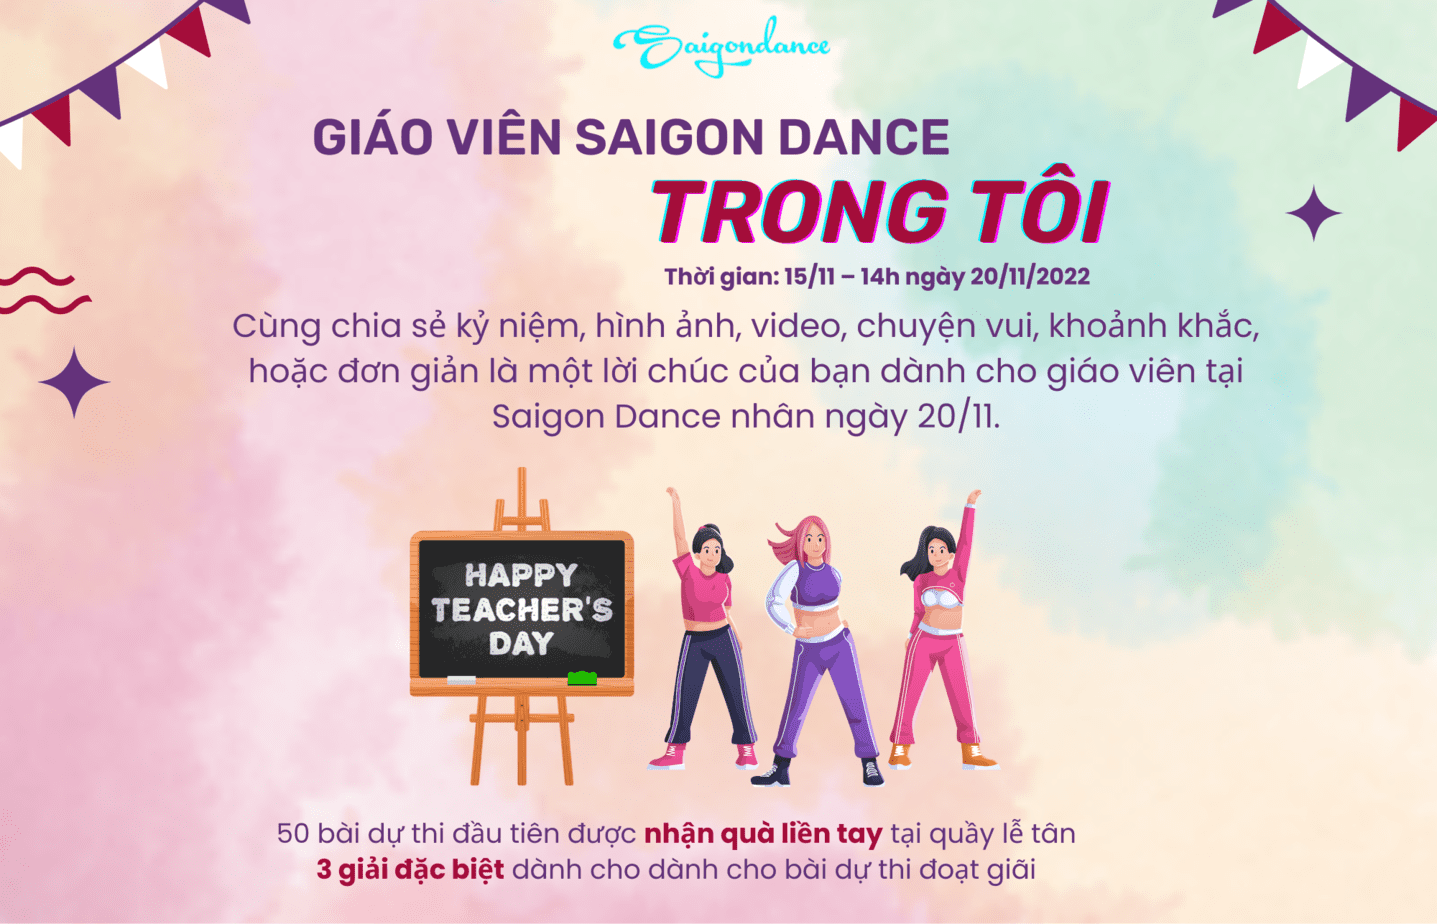 Nhận quà liền tay cùng Cuộc thi "Giáo viên Saigon Dance trong tôi" 6